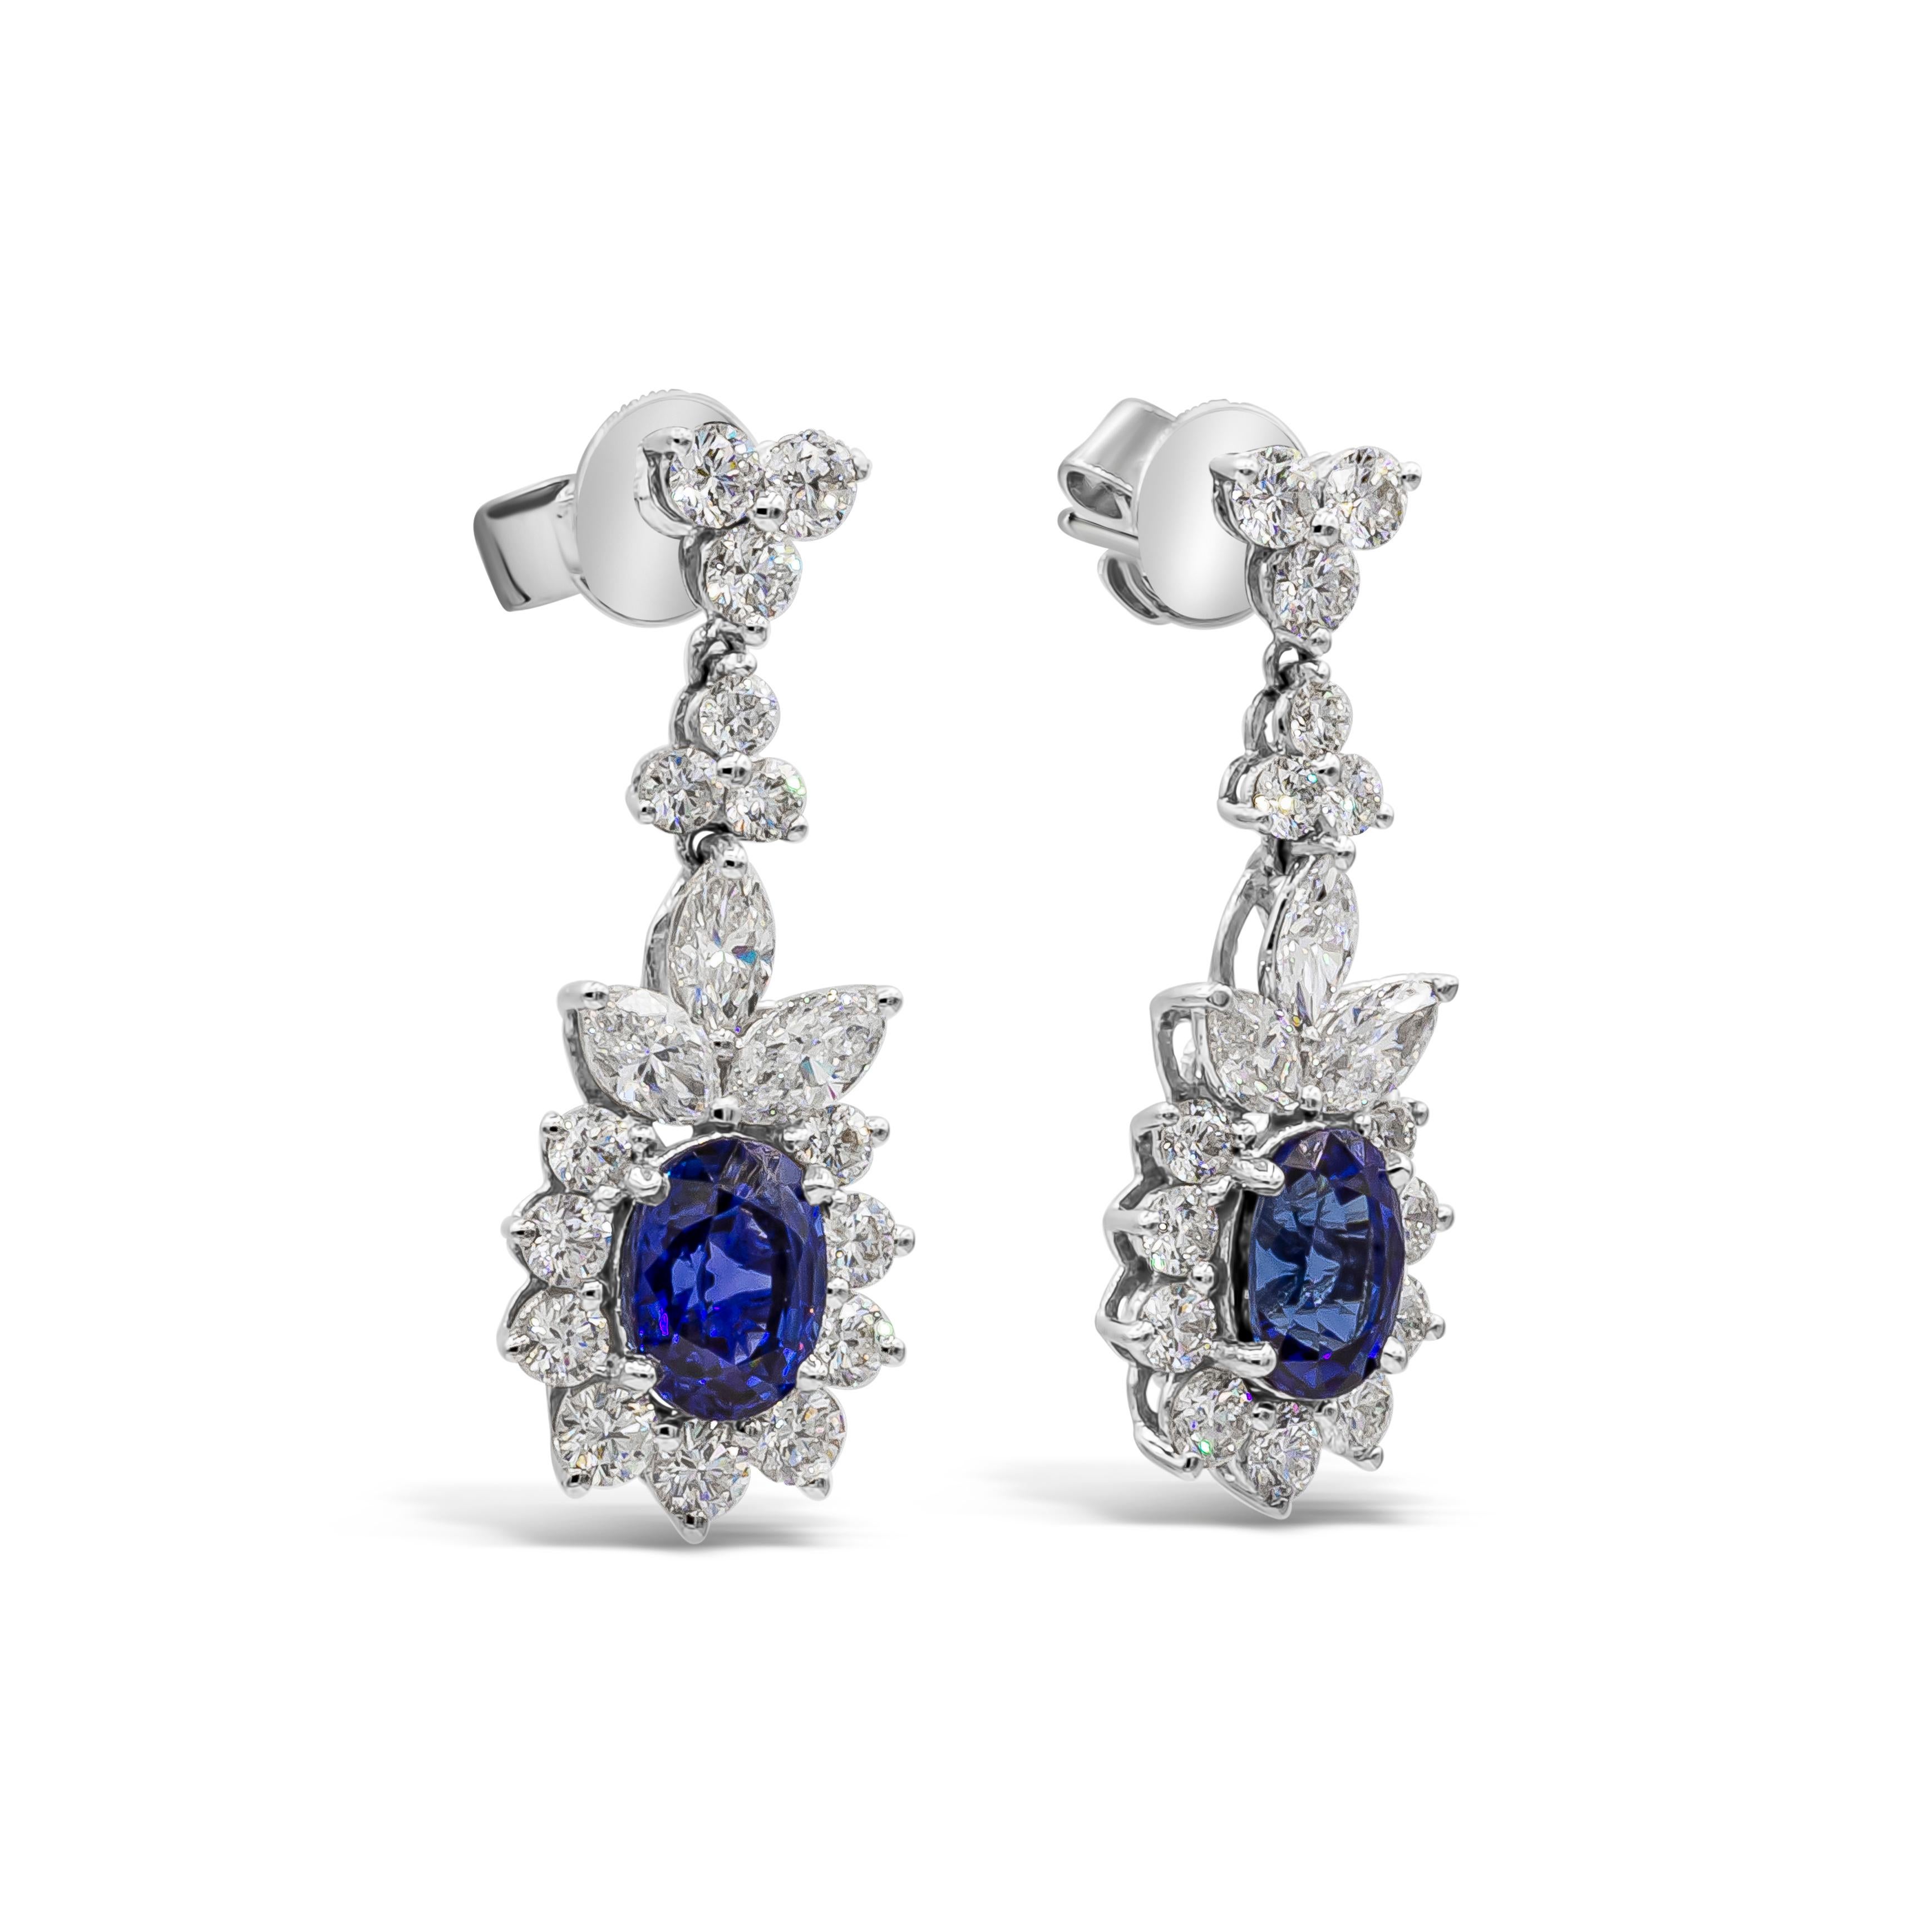 Diese eleganten und klassischen Ohrringe zeigen wunderschöne blaue Saphire im Ovalschliff mit einem Gesamtgewicht von 3,72 Karat. Akzentuiert durch eine Reihe runder Brillanten im Halo-Design, aufgehängt und beabstandet von Diamanten im